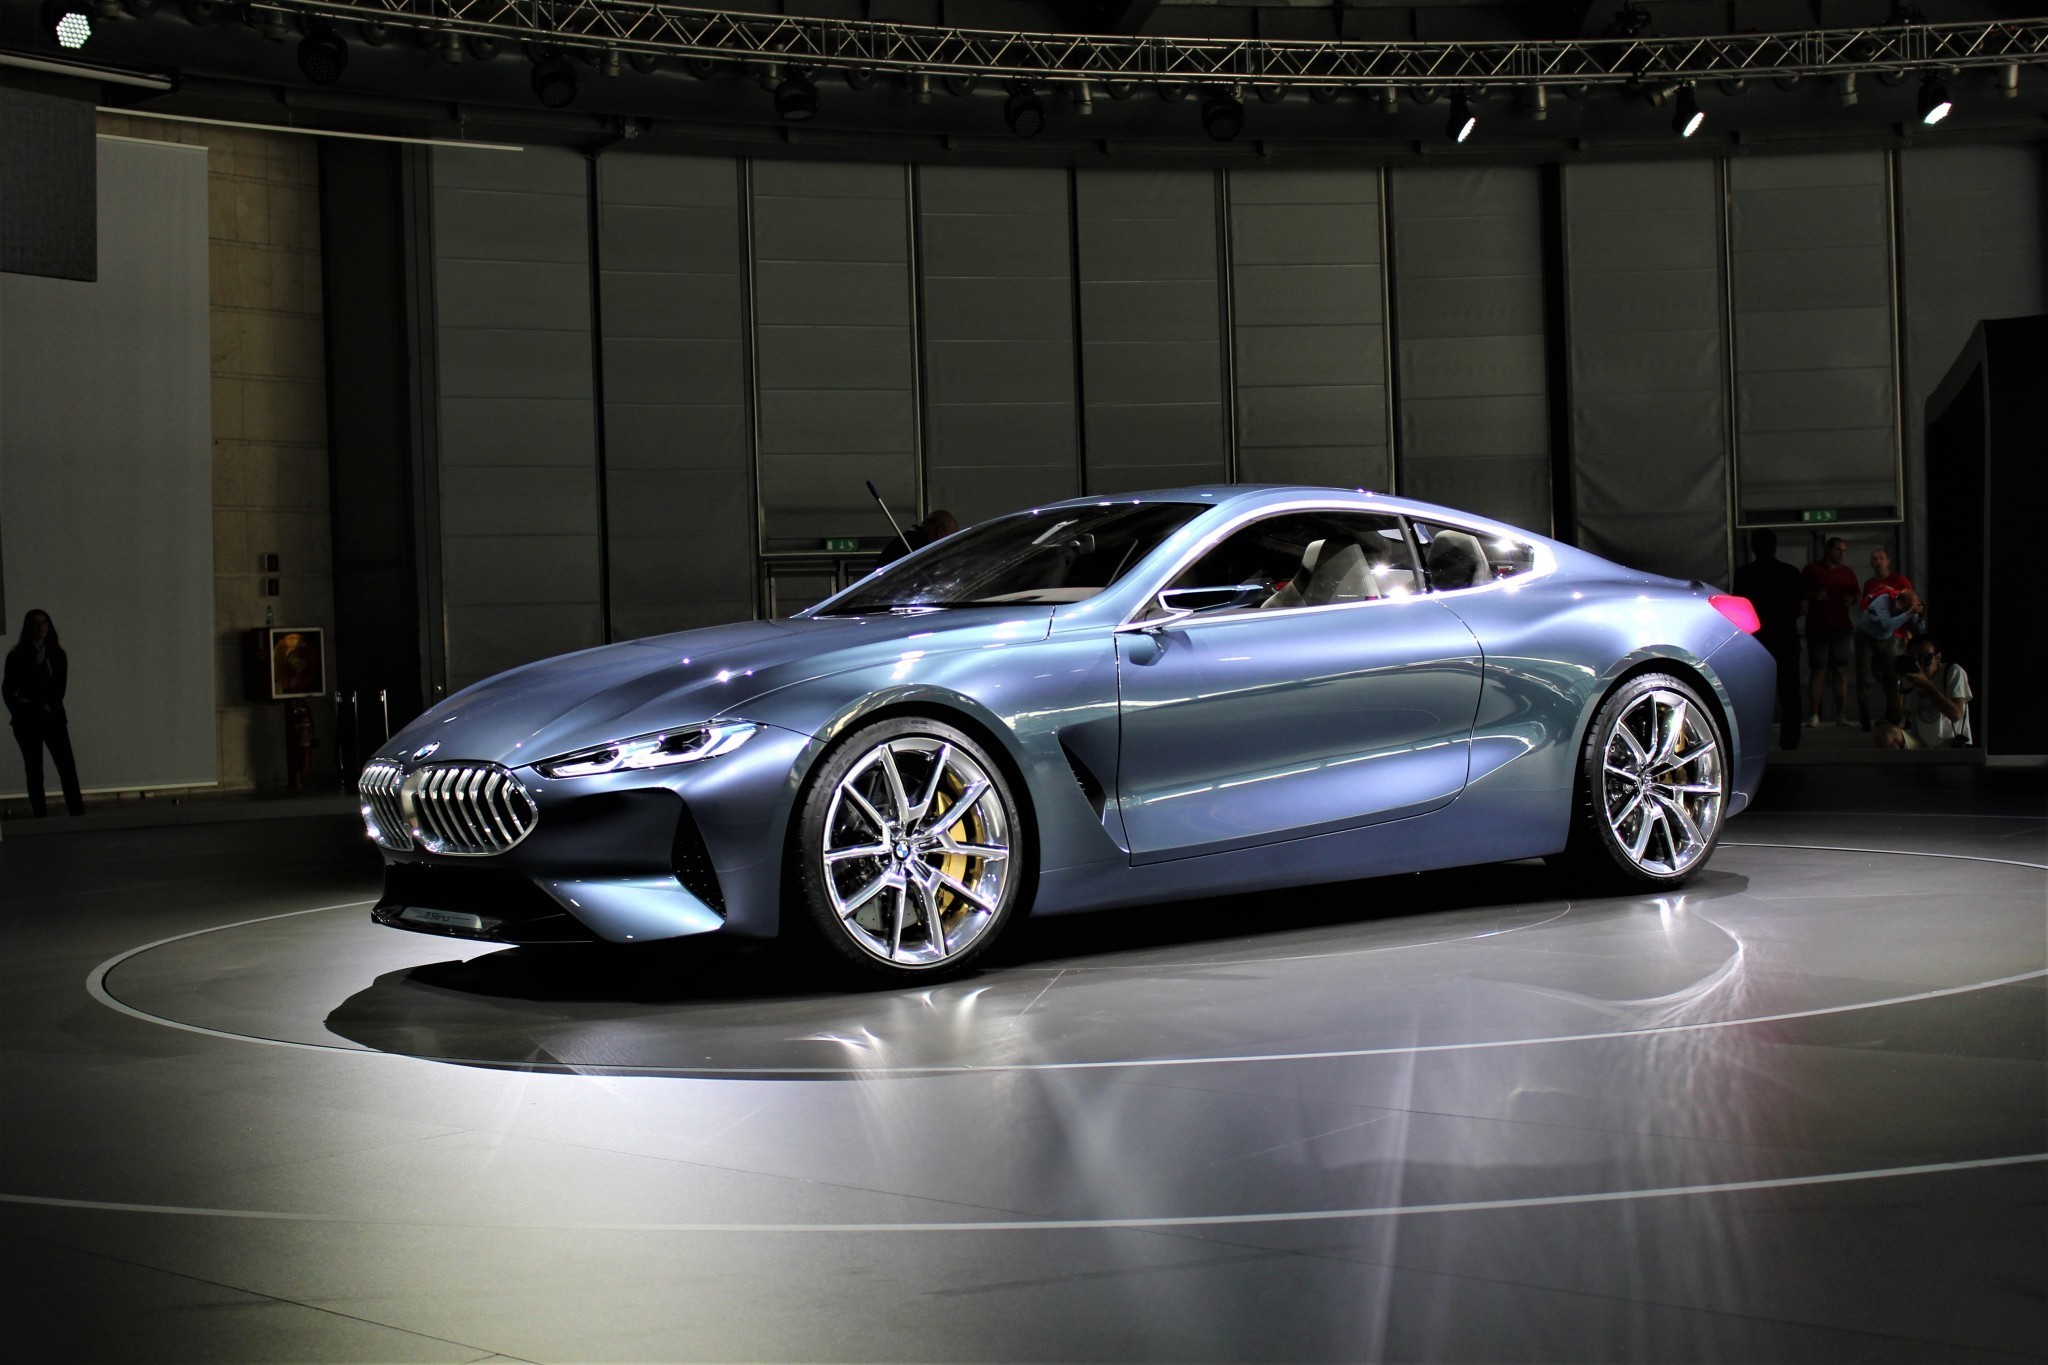 Scopri di più sull'articolo BMW Serie 8 Concept svelato a Villa d’Este